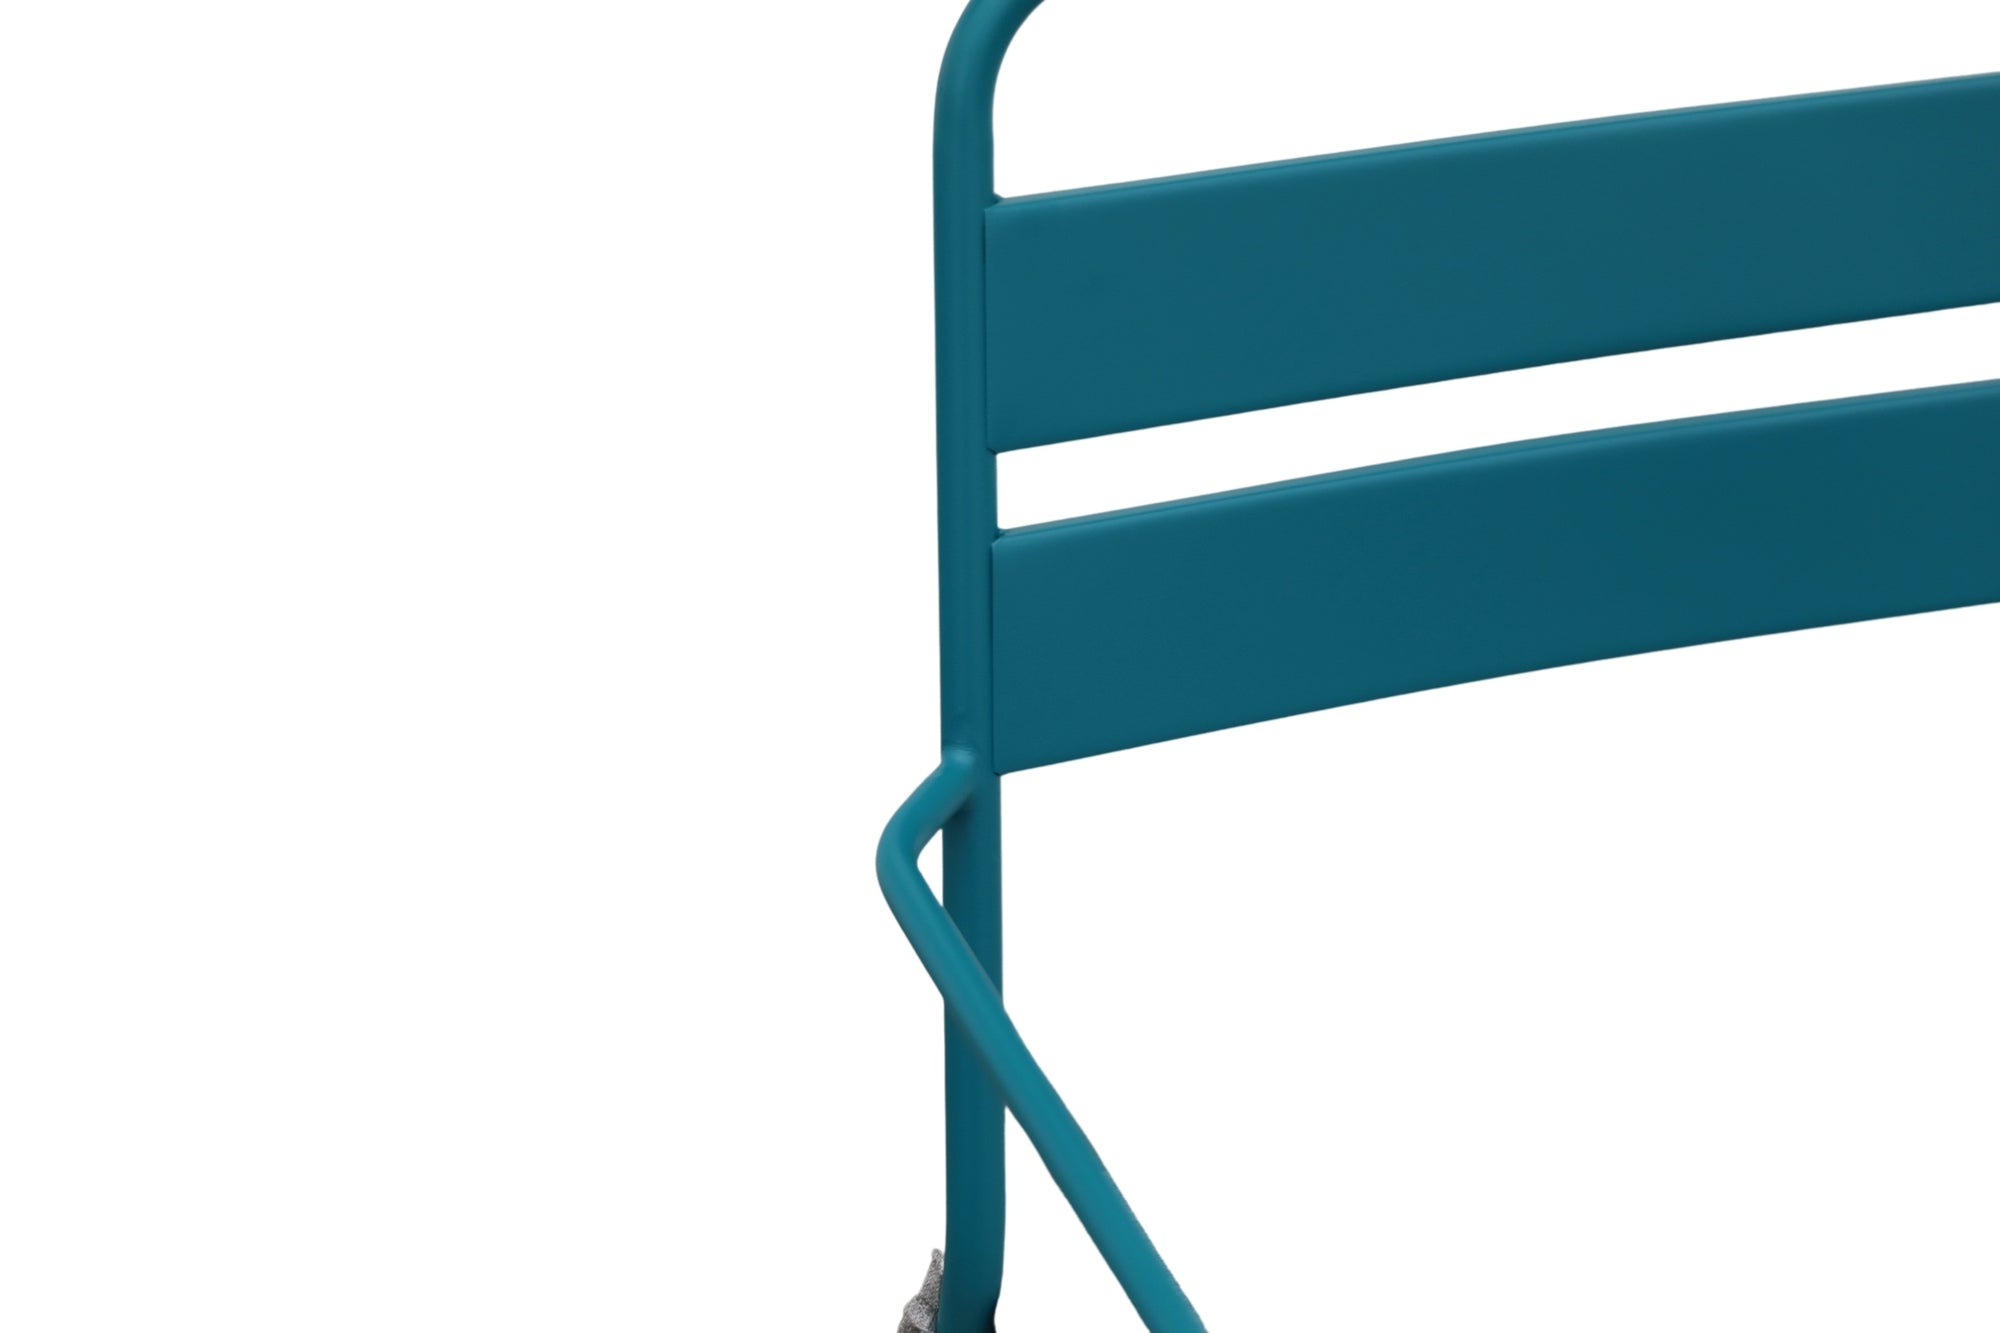 Moderne 'Palermo' Stahlrohrstühle in Currygelb, Korallenrot und Wasserblau mit hellgrauen Kissen, erhältlich bei Gartenmöbelshop.at – ideal für trendbewusste Outdoor-Gestaltung.